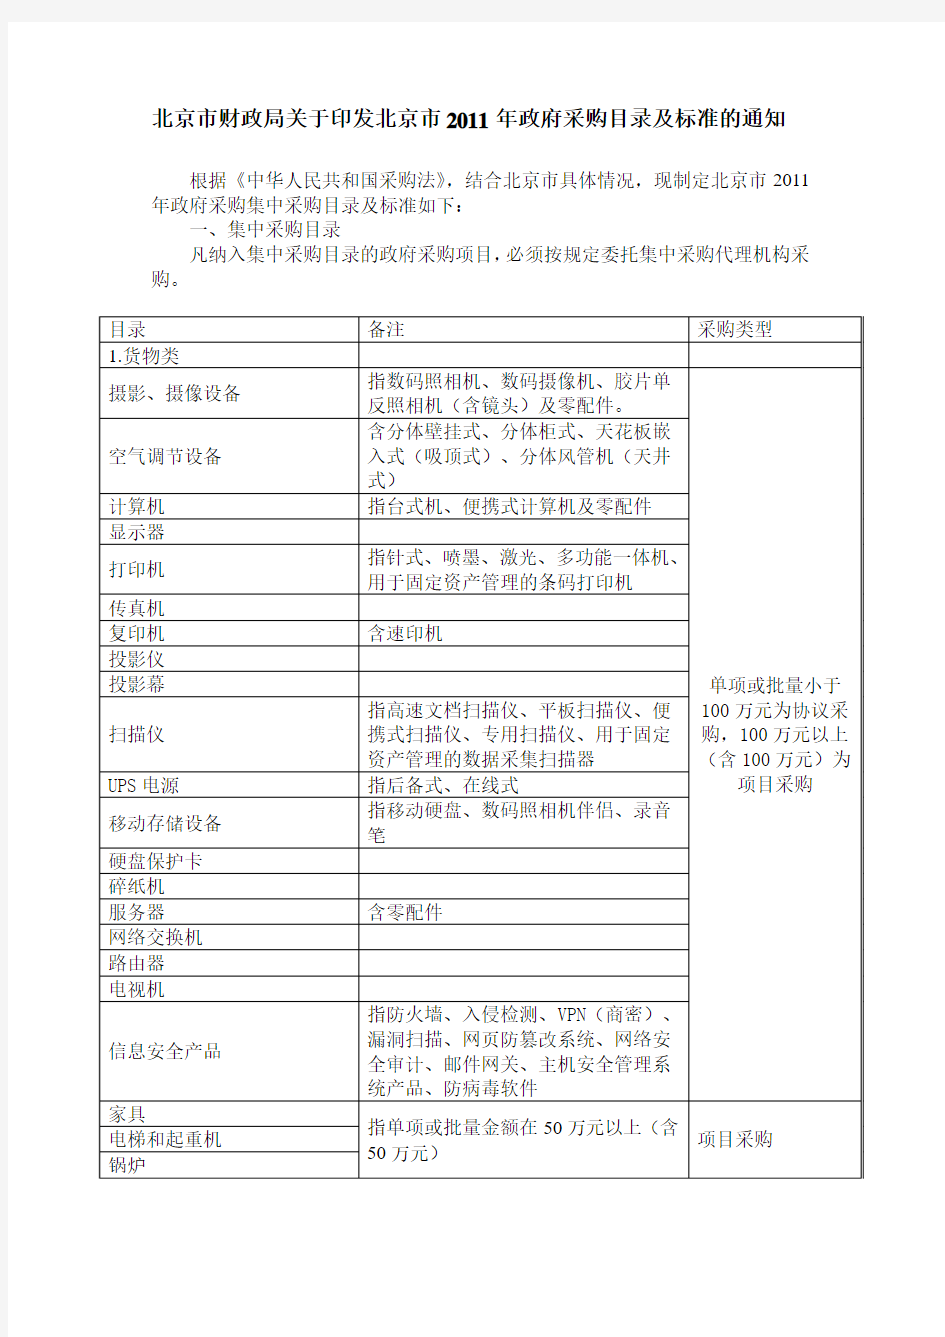 北京市财政局关于印发北京市2011年政府采购目录及标准的通知